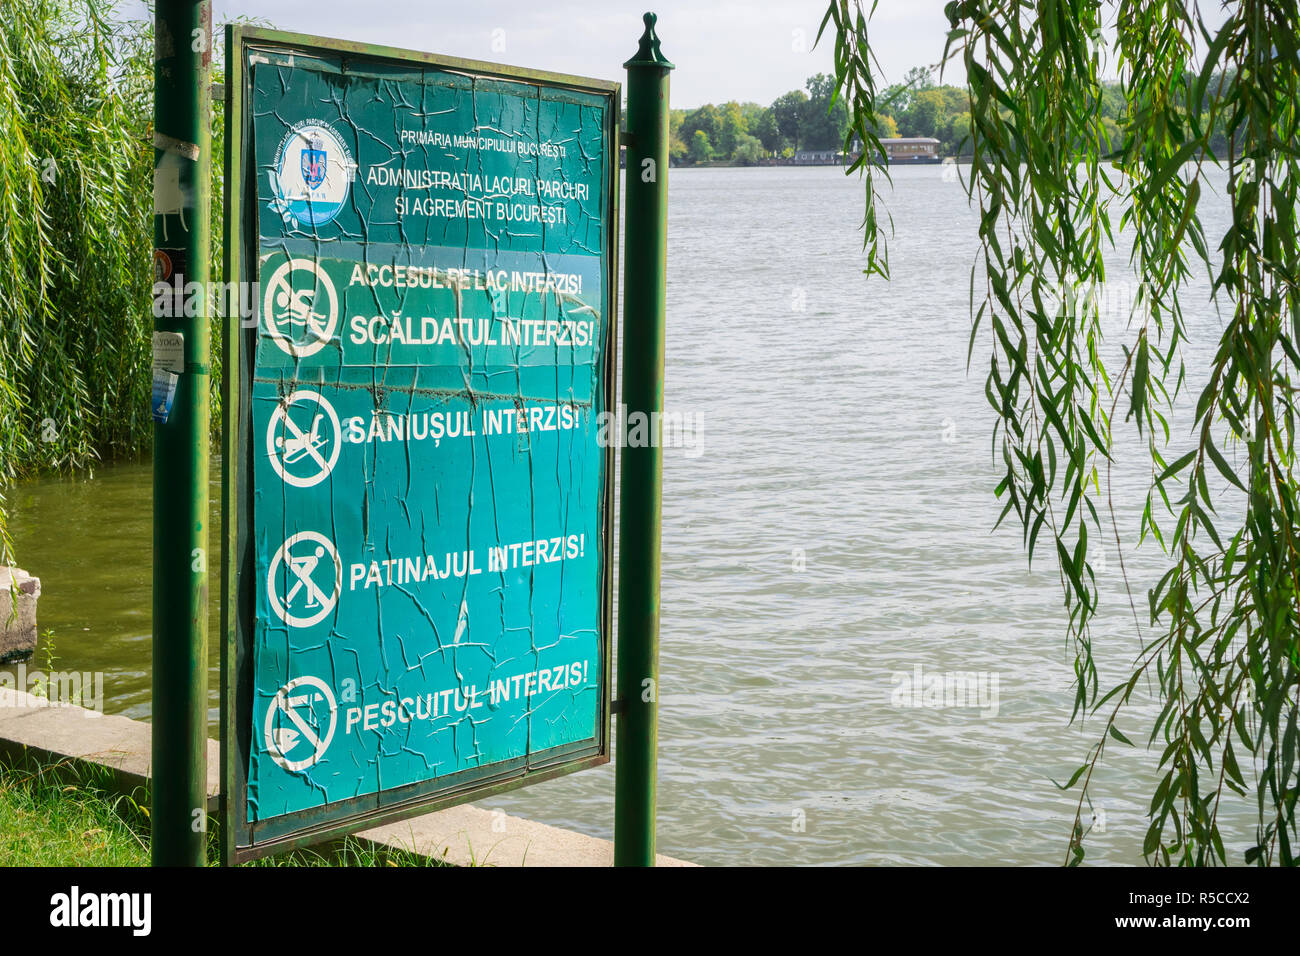 September 19, 2017, Bukarest/Rumänien - Kein Schwimmen, Schlittschuhlaufen, Angeln oder Rodeln auf der Oberfläche des Sees veröffentlicht Warnungen auf einem Panel am Ufer des Herast Stockfoto